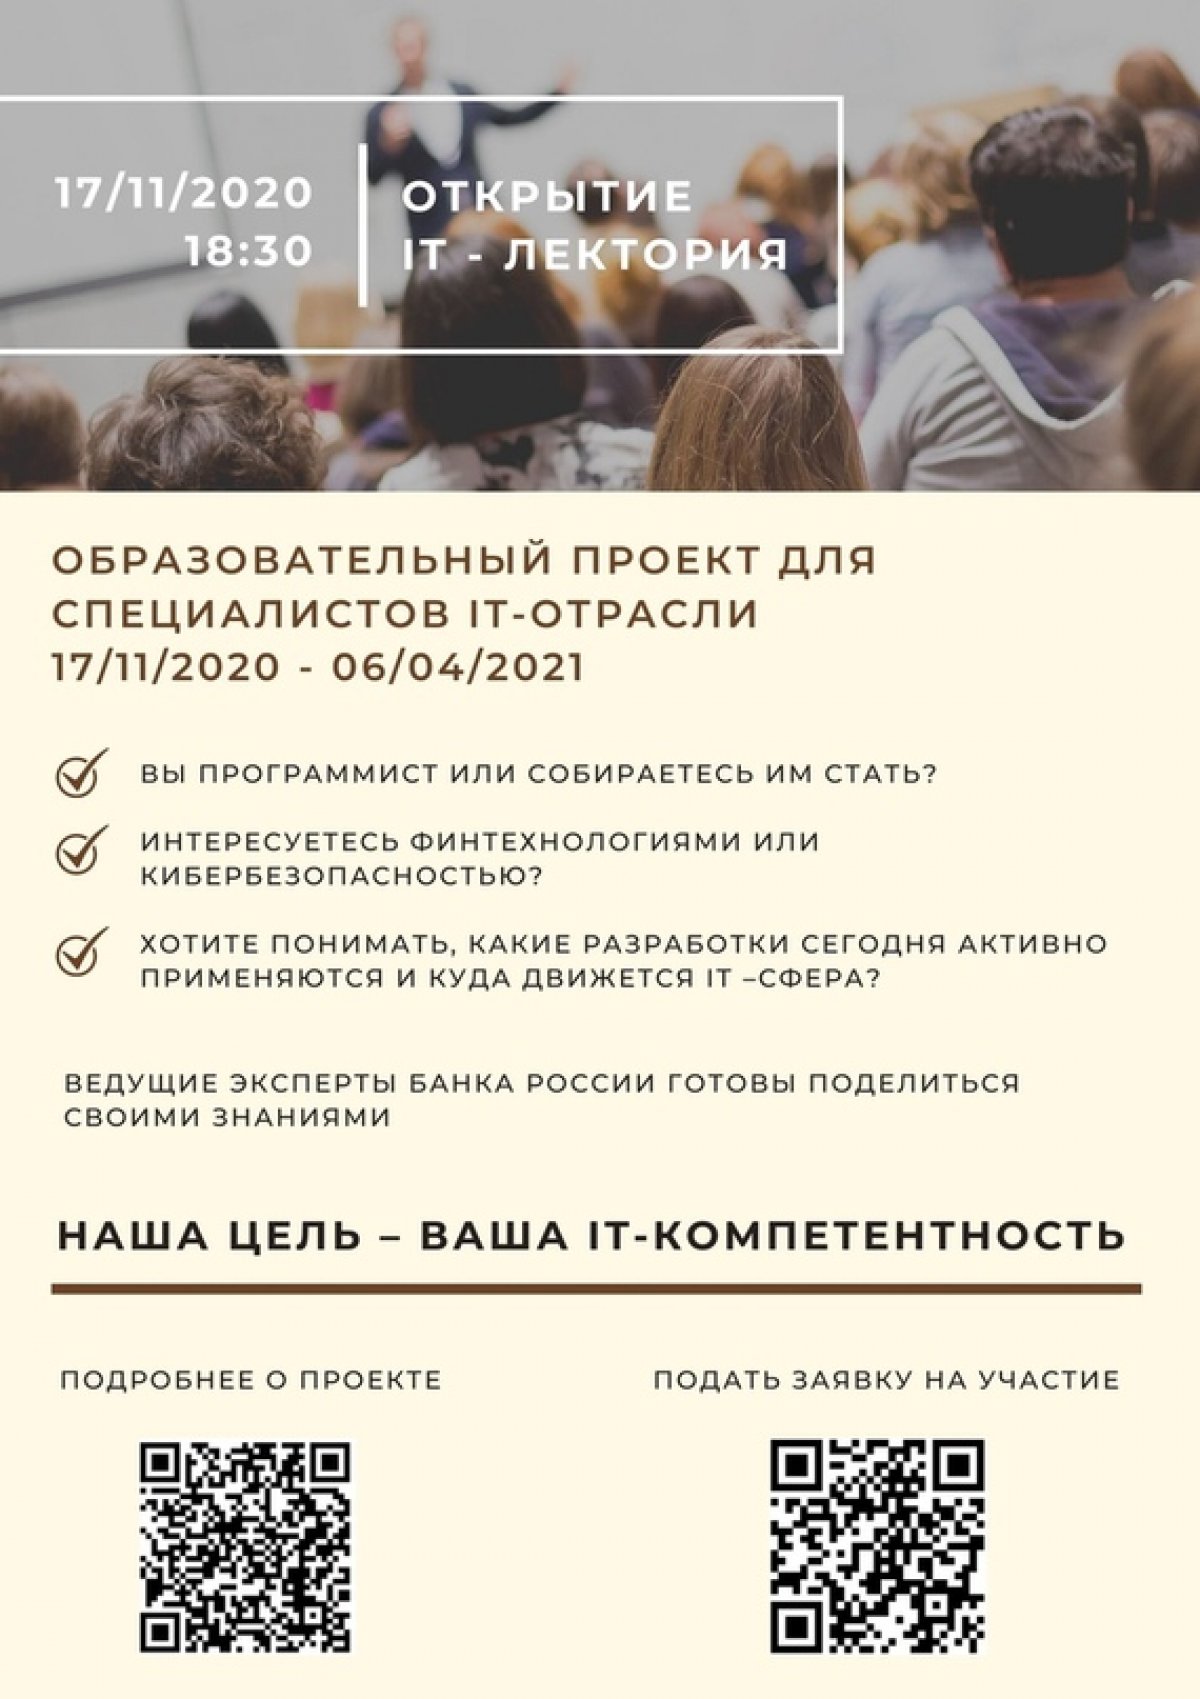 Новый проект Банка России приглашает к участию!